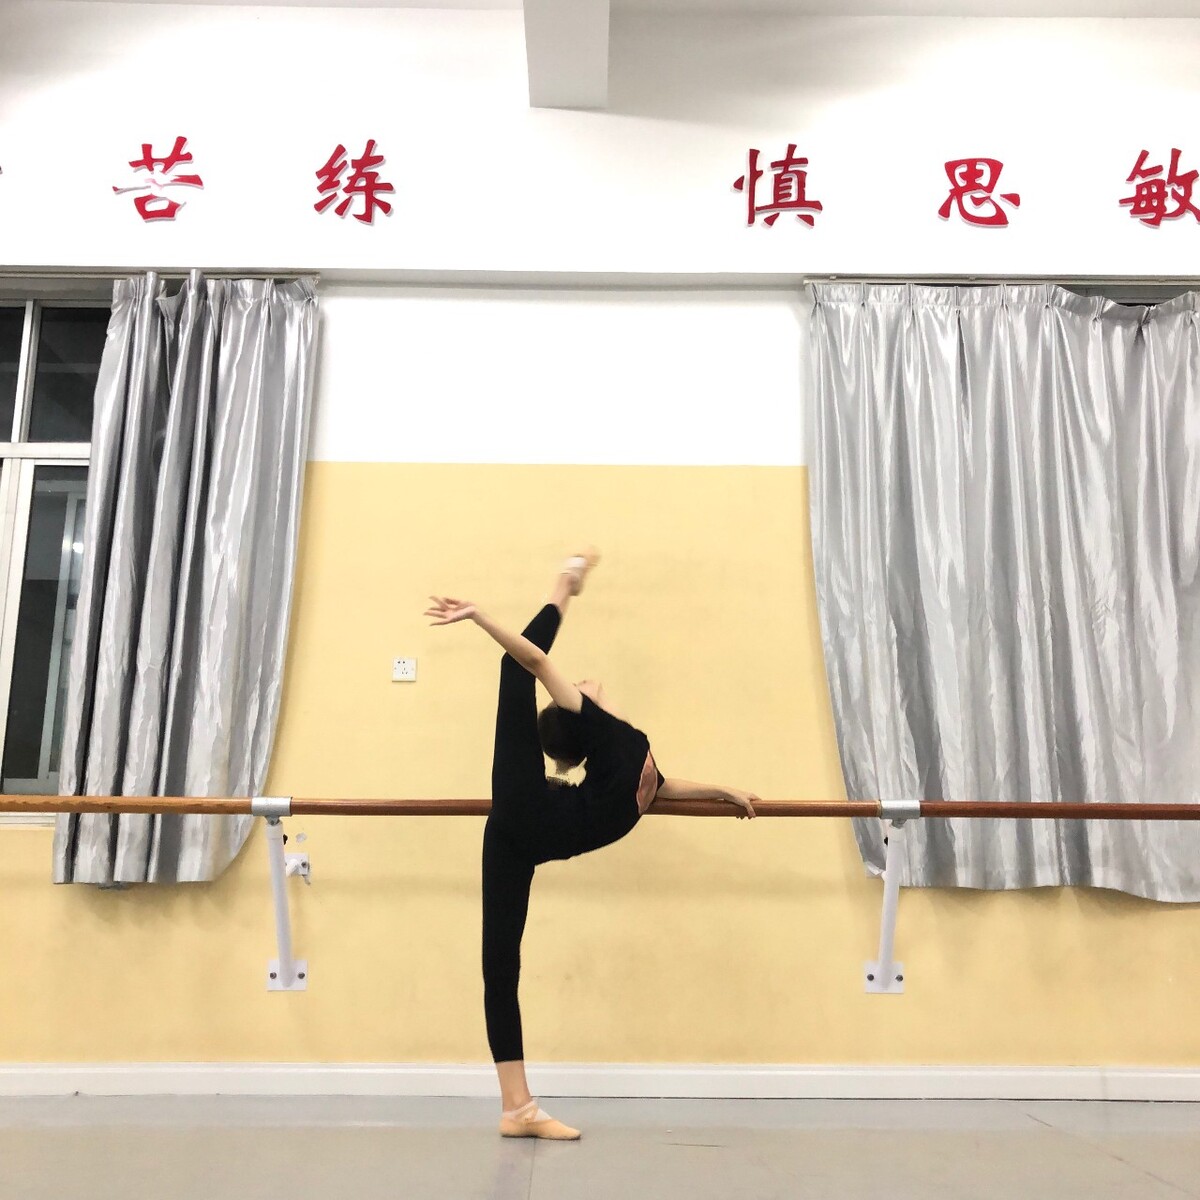 舞蹈七级考试视频教学视频,中国舞蹈考试等级号七级